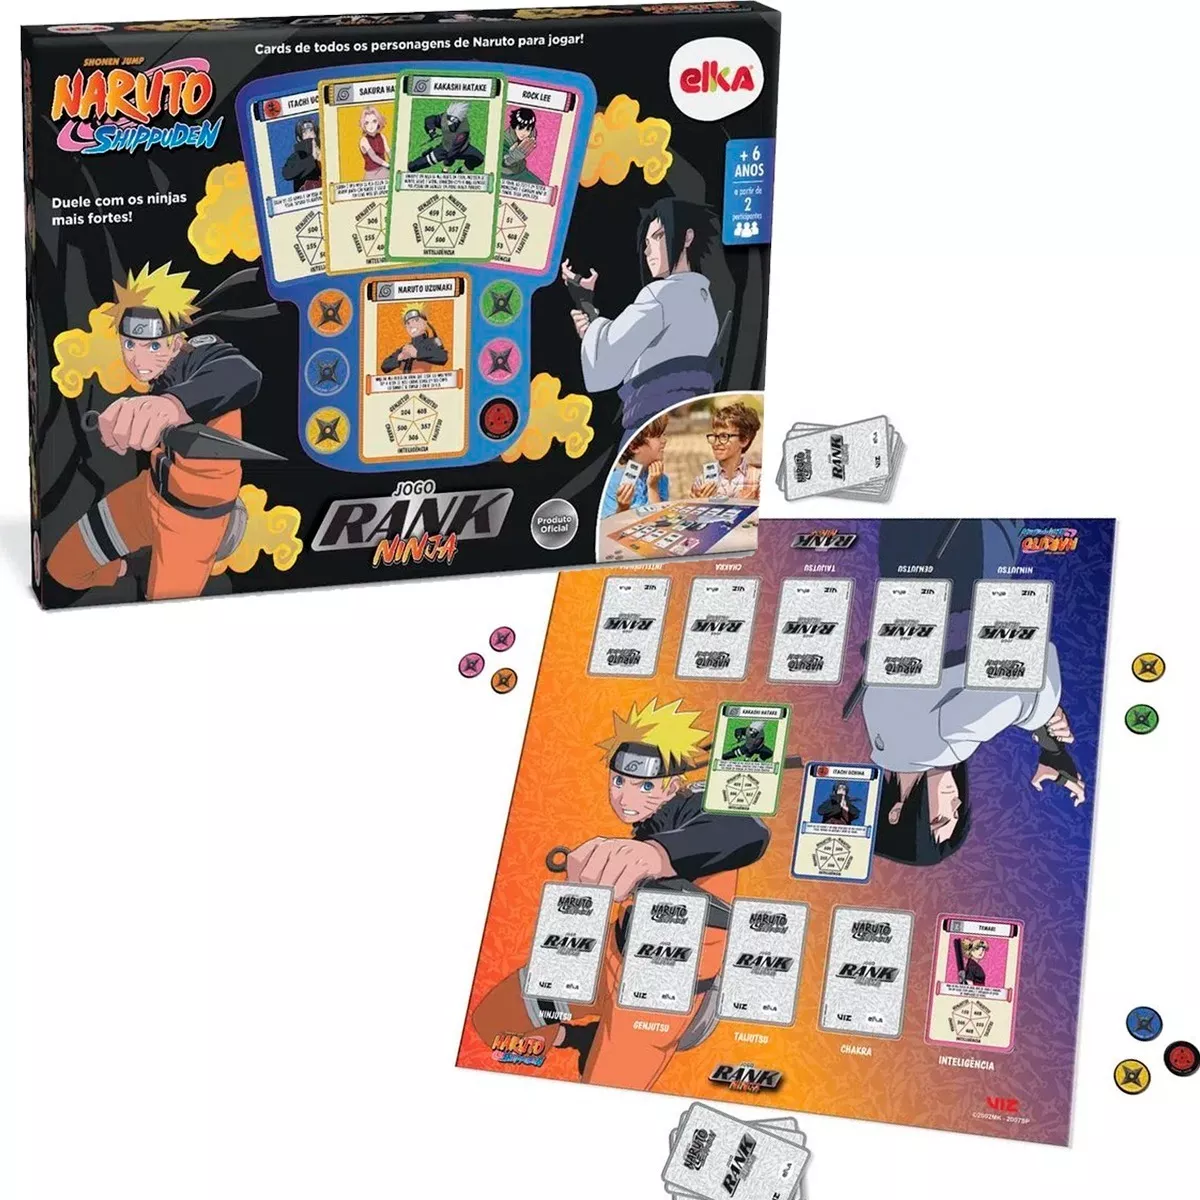 Card Game Naruto Shippuden Rank Ninja - Elka Brinquedos